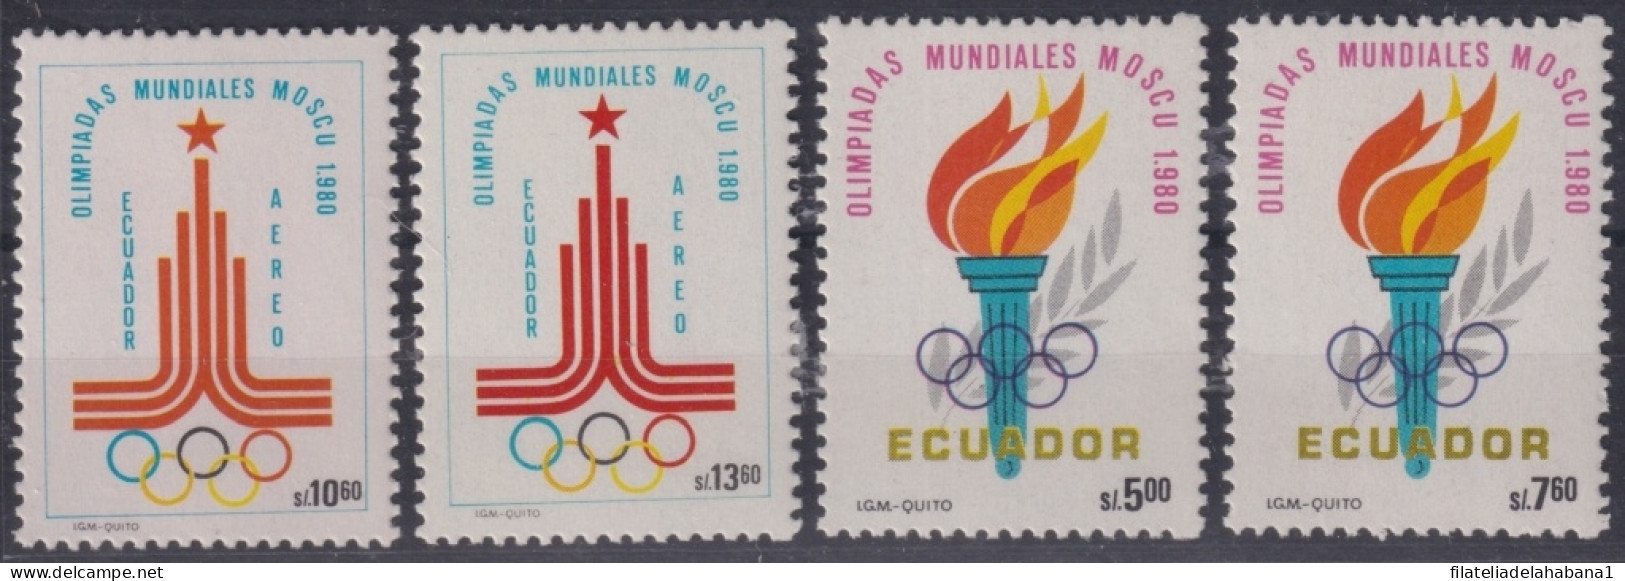 F-EX50102 ECUADOR MNH 1980 MOSCOW OLYMPIC GAMES.            - Zomer 1980: Moskou